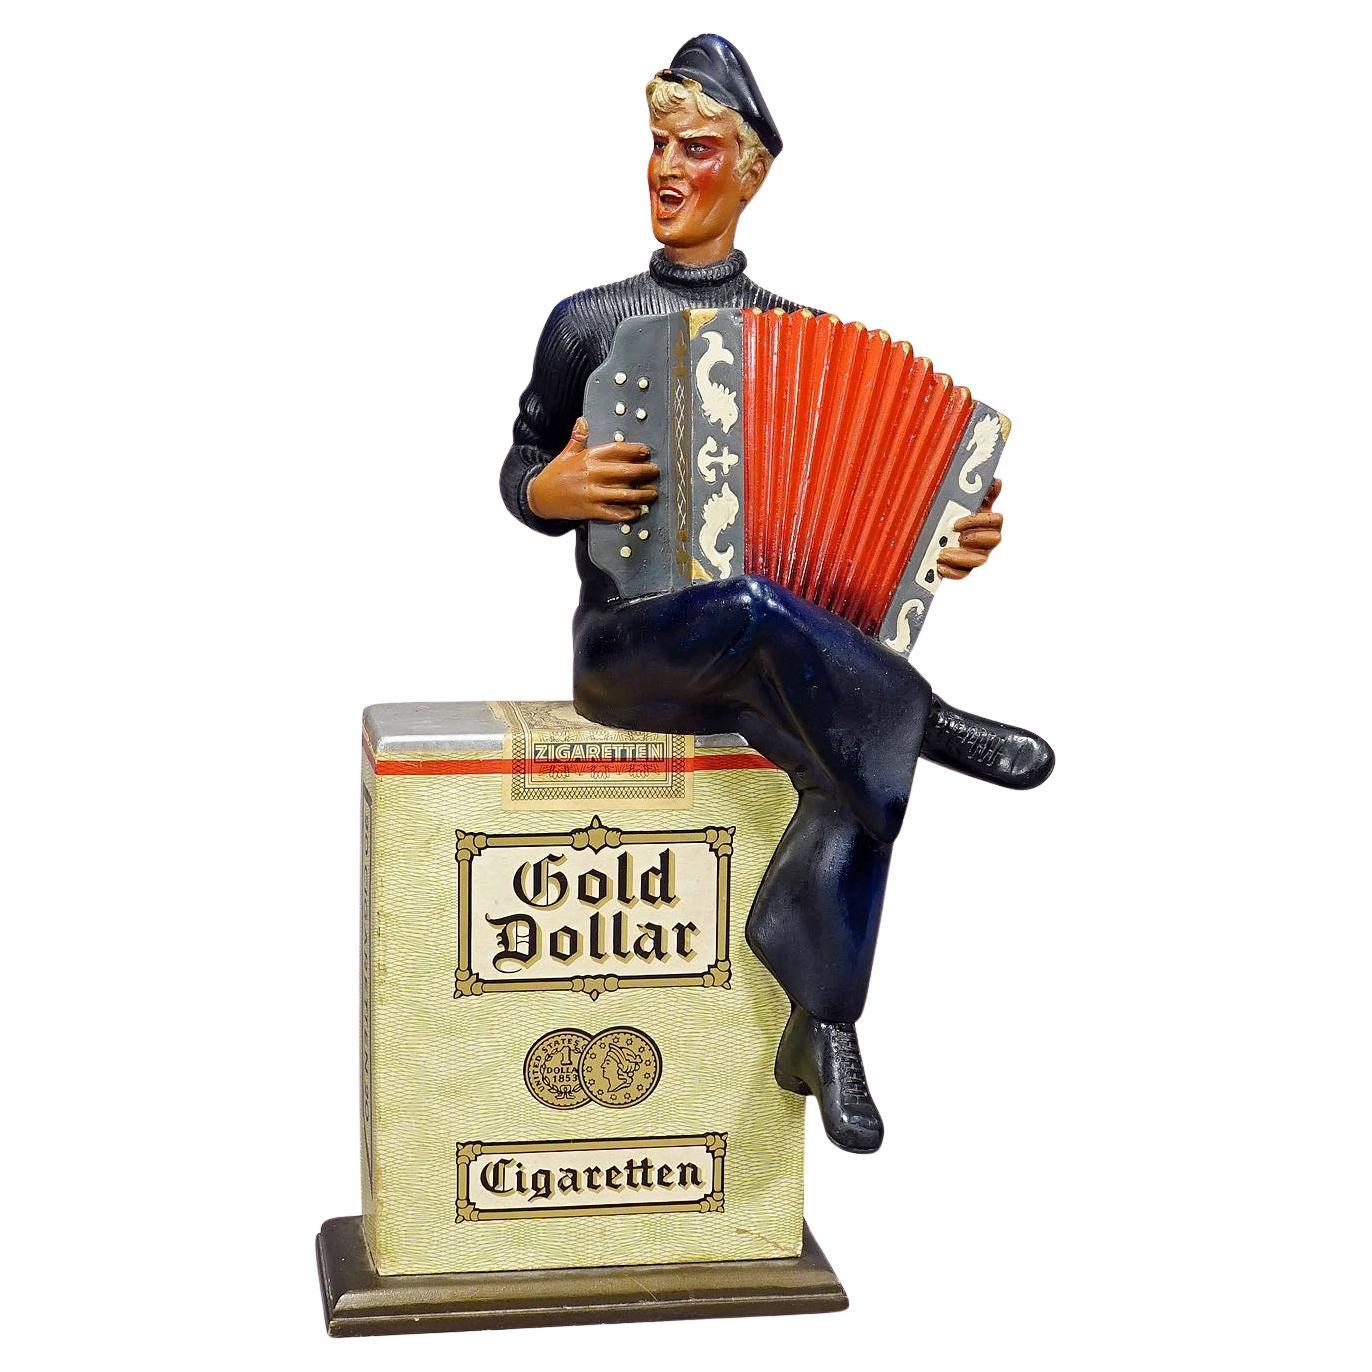 Werbe-Skulptur aus Gold-Dollar-Zigaretten im Vintage-Stil, 1950er Jahre